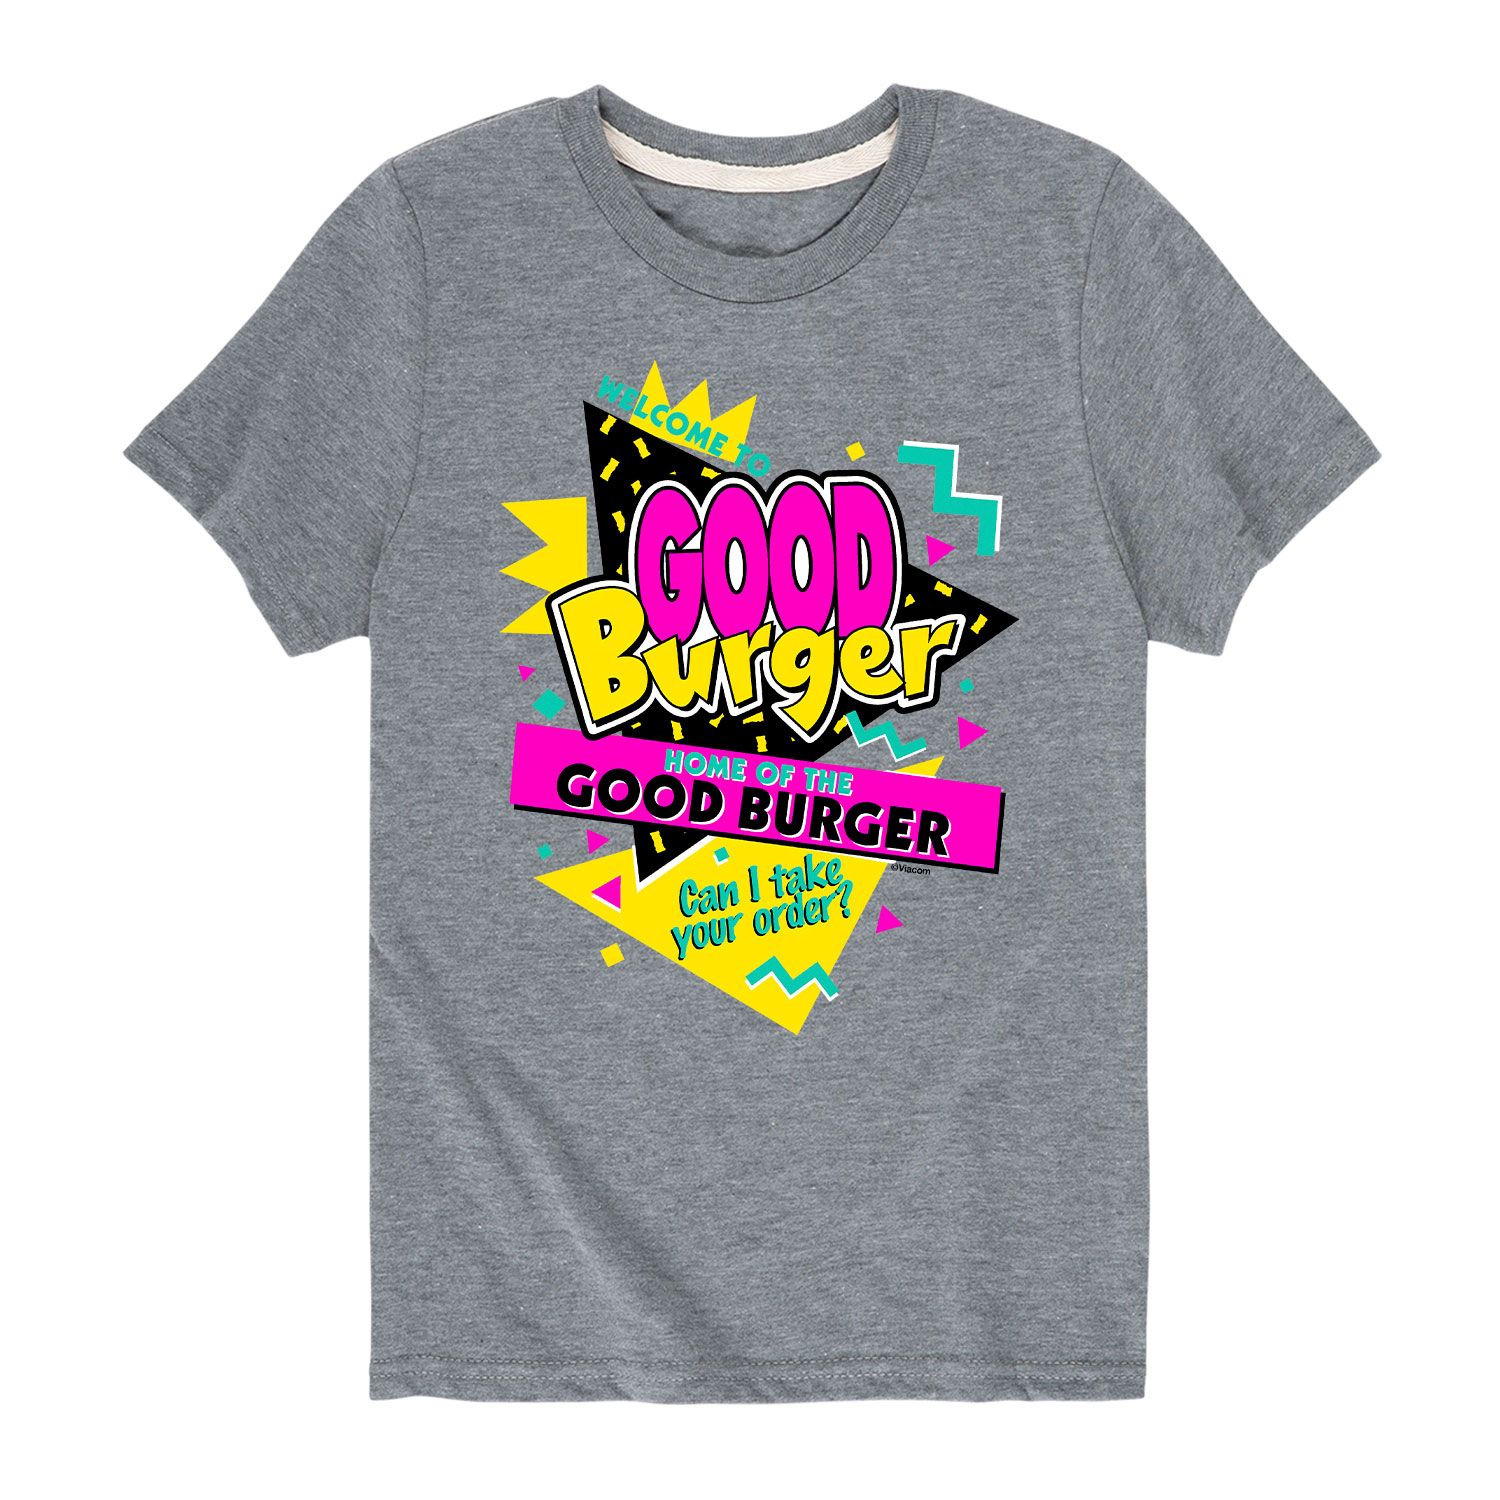 Футболка Good Burger для мальчиков 8–20 лет с надписью «Добро пожаловать в Good Burger» Licensed Character, серый